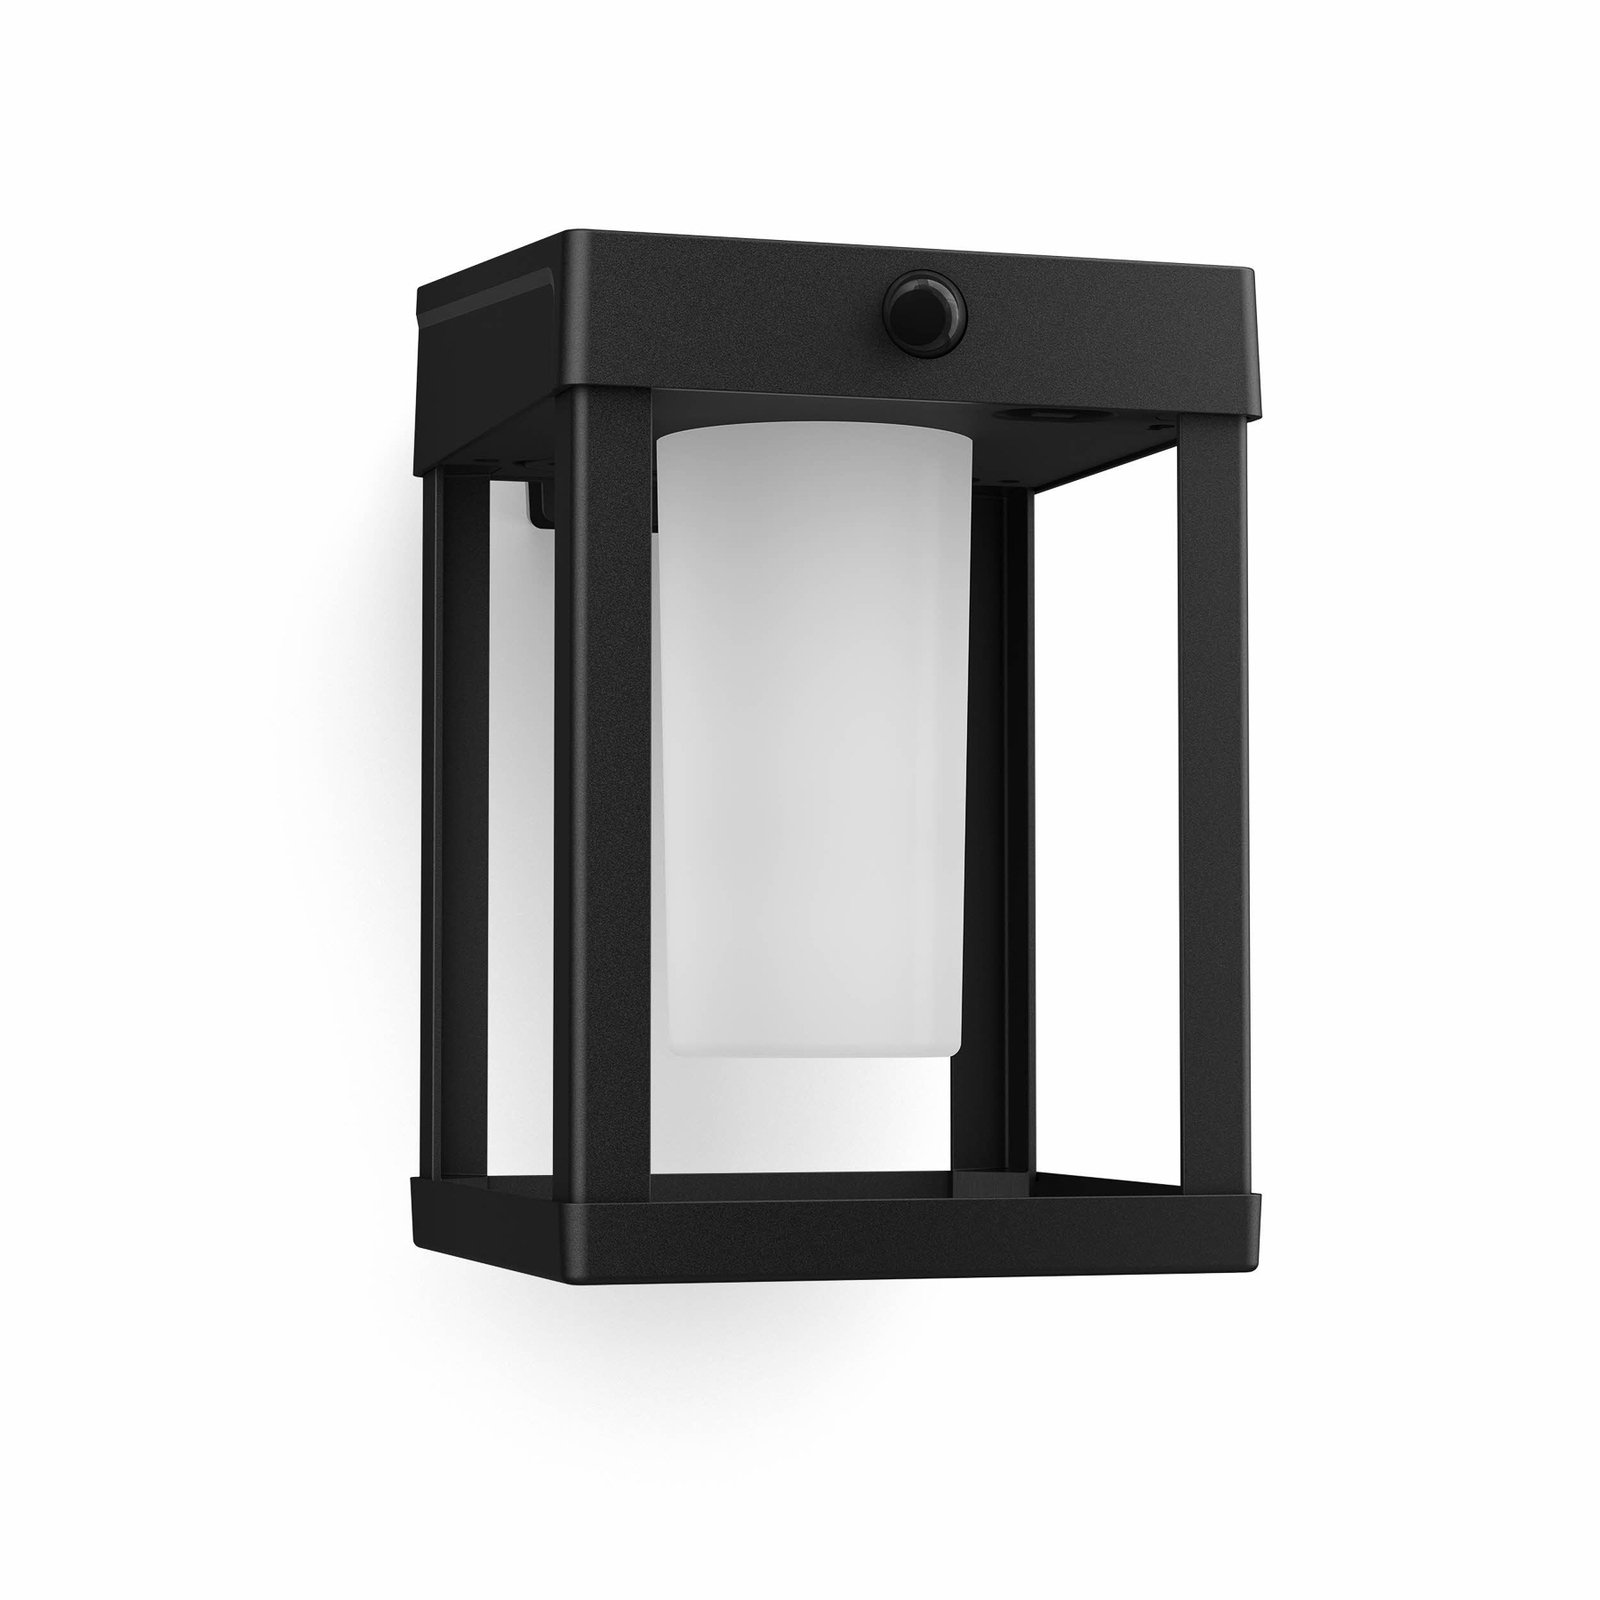 Philips LED-solcellsdriven vägglampa Camill, svart/vit, 14 x 14 cm